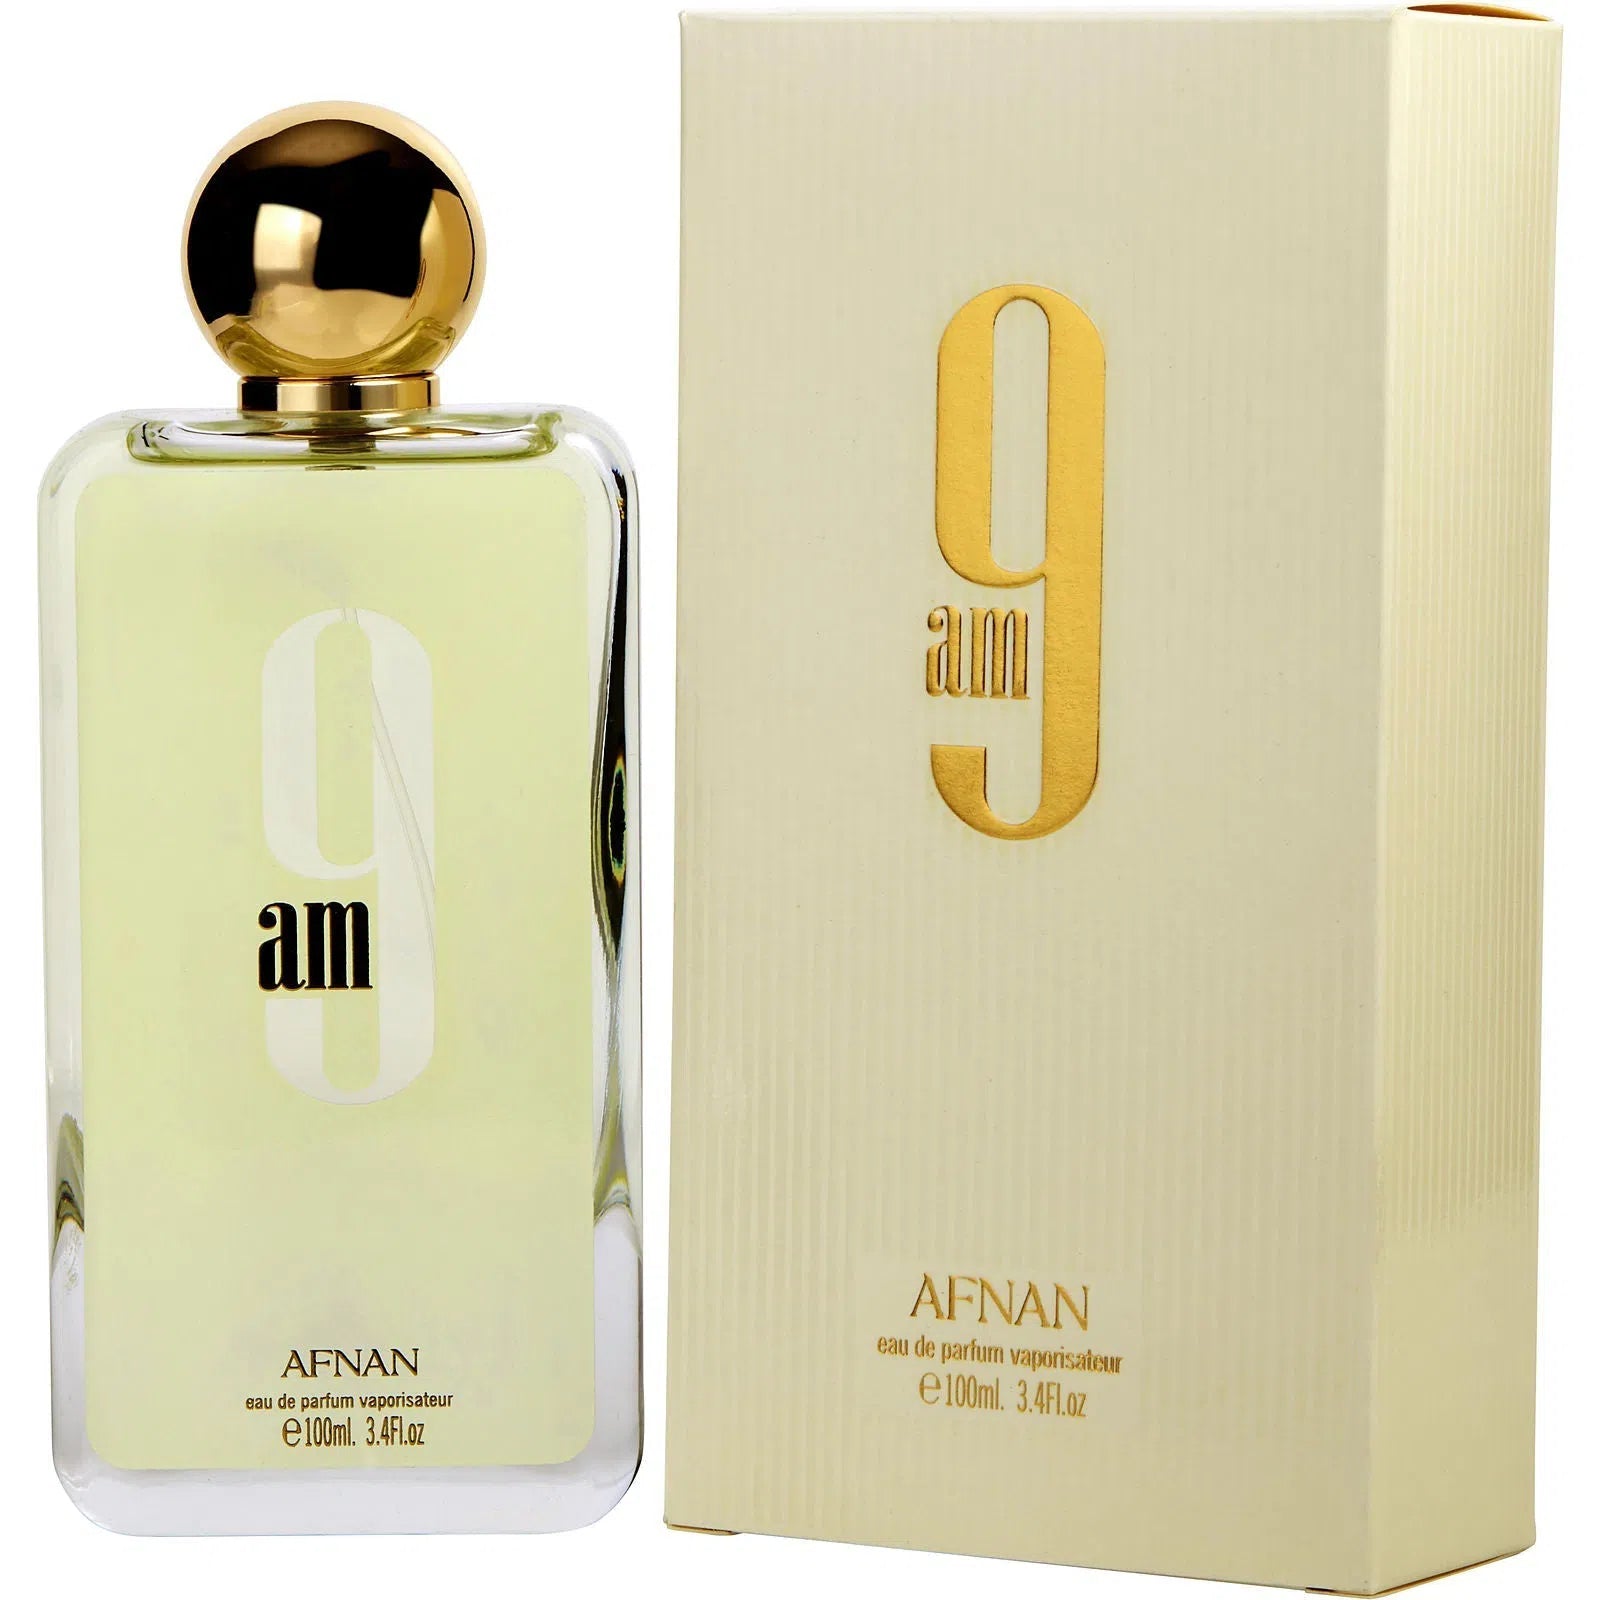 Perfume Afnan 9AM EDP (W) / 100 ml - 6290171002345- Prive Perfumes Honduras